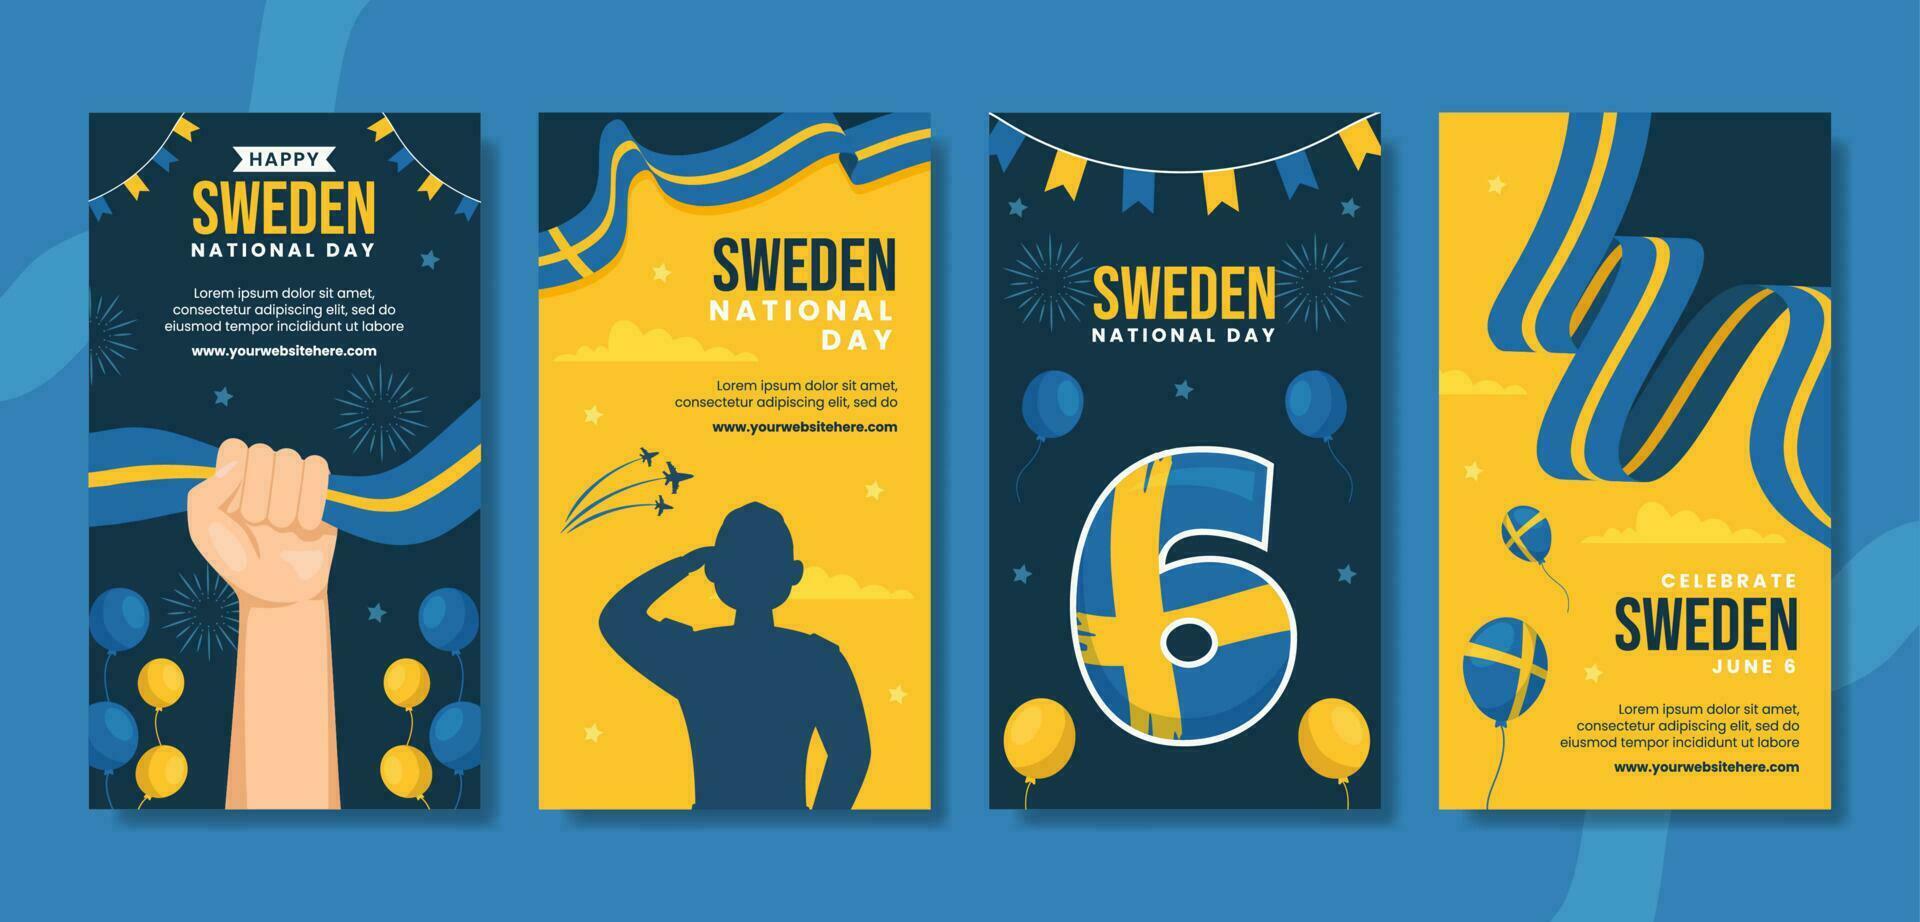 Svezia nazionale giorno sociale media storie piatto cartone animato mano disegnato modelli illustrazione vettore